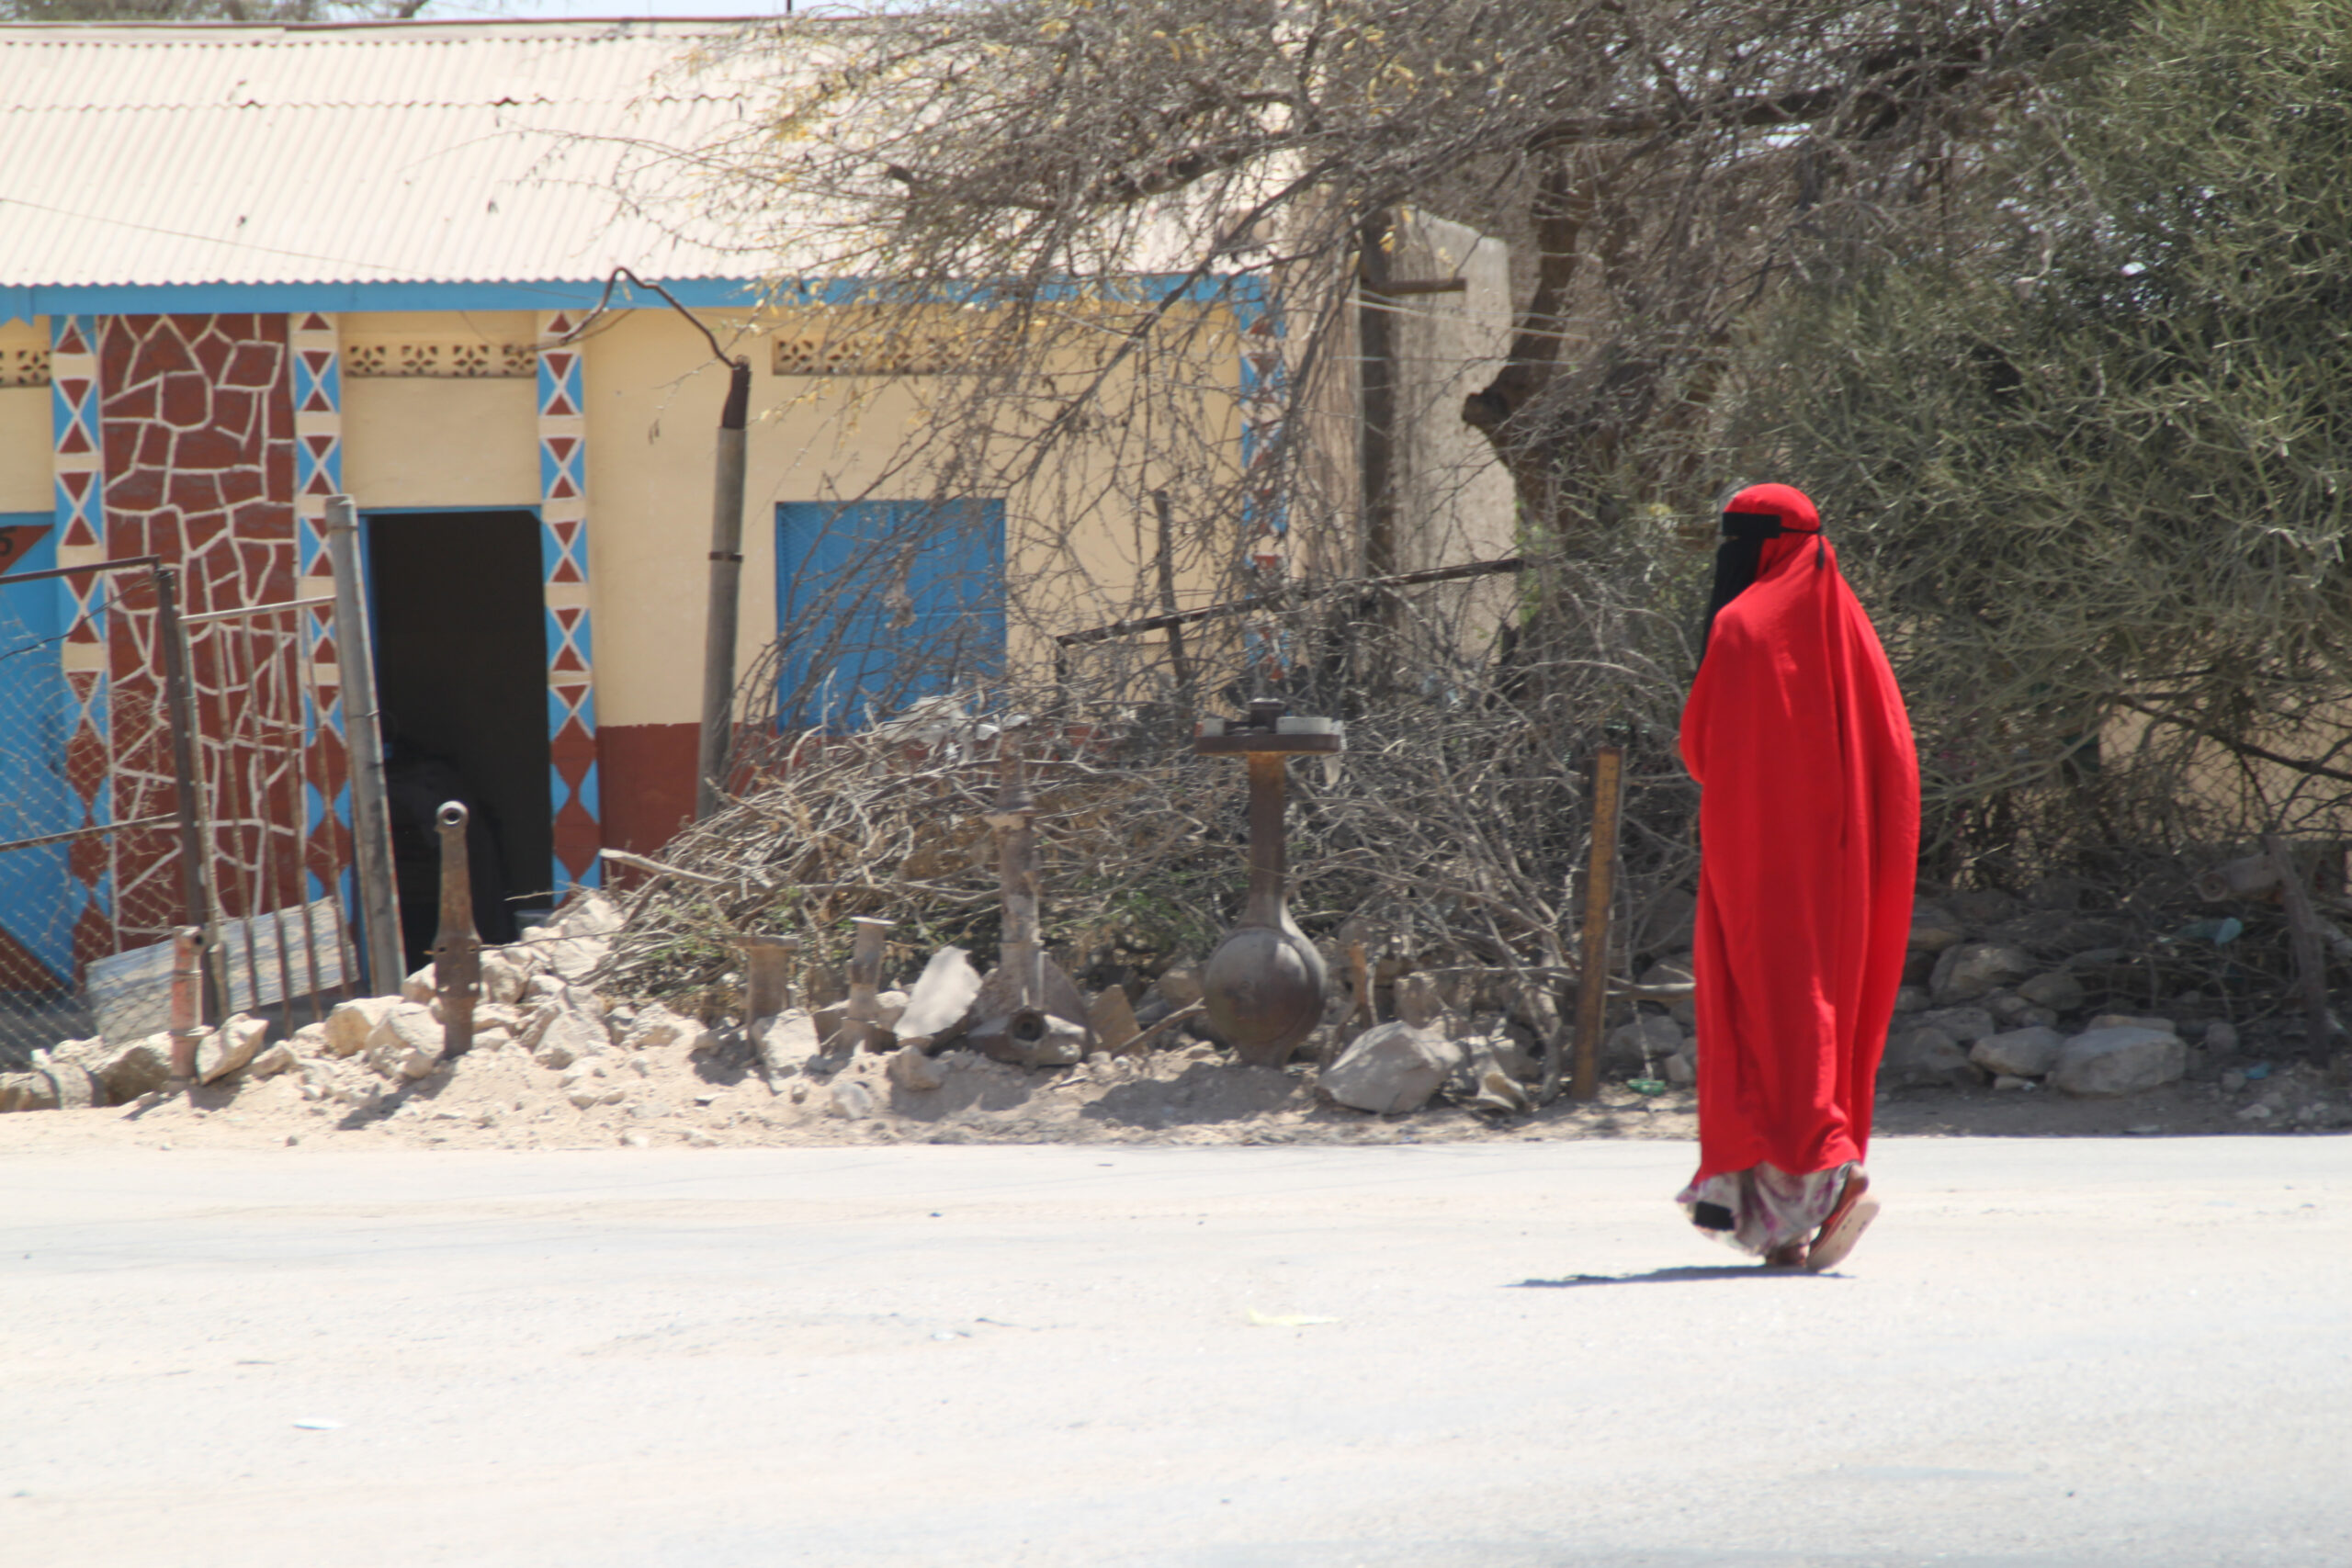 SOMALIA | JUN. 23, 2021 — Hopeful Update for Imprisoned Christians Awaiting Trial